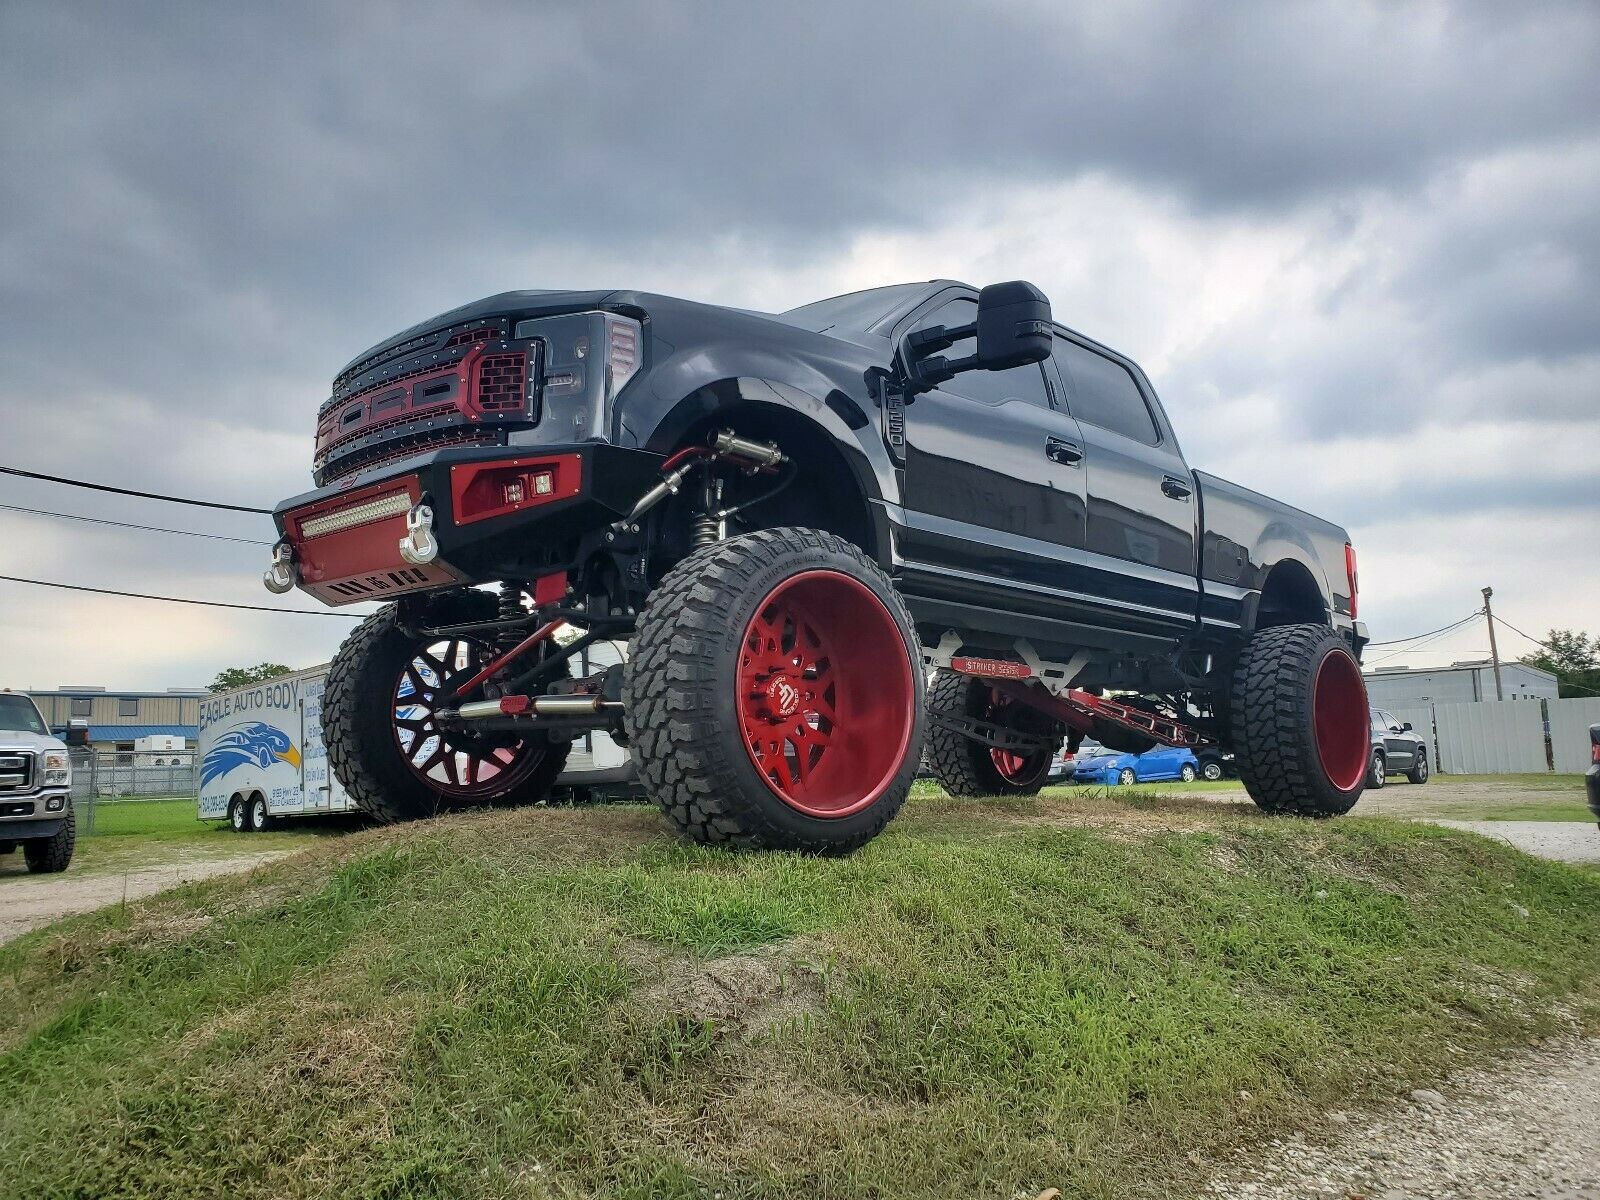 monster trucks for sale